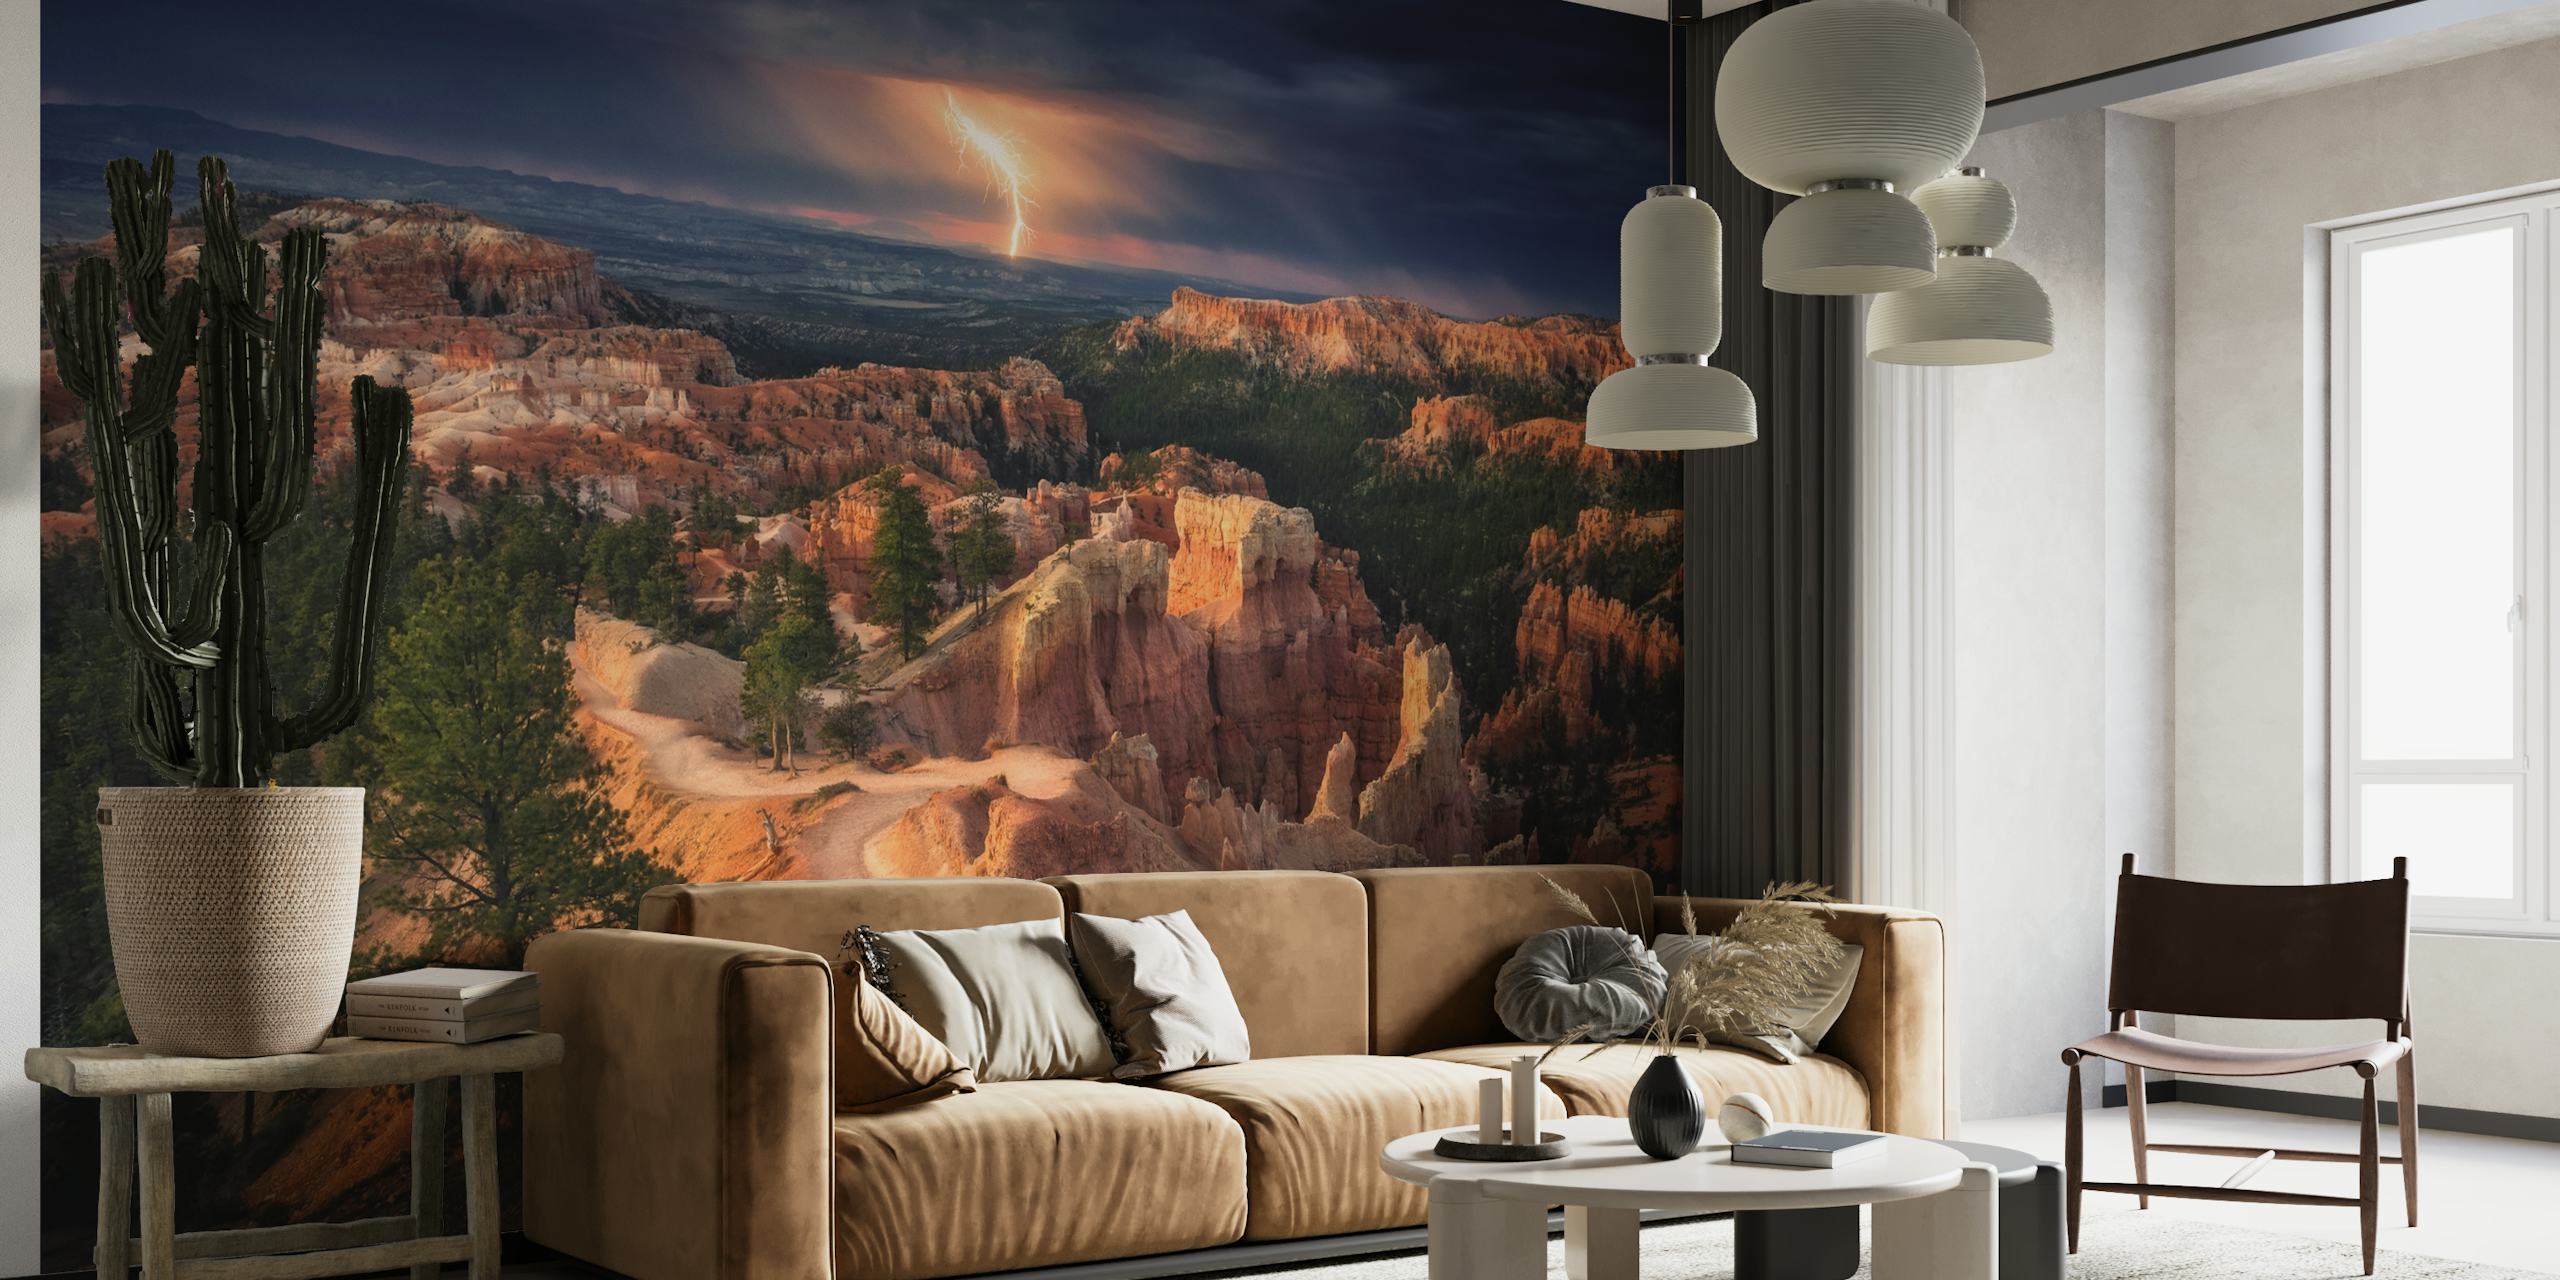 Orage sur la fresque murale de Bryce Canyon avec des nuages dynamiques et des formations rocheuses éclairées.